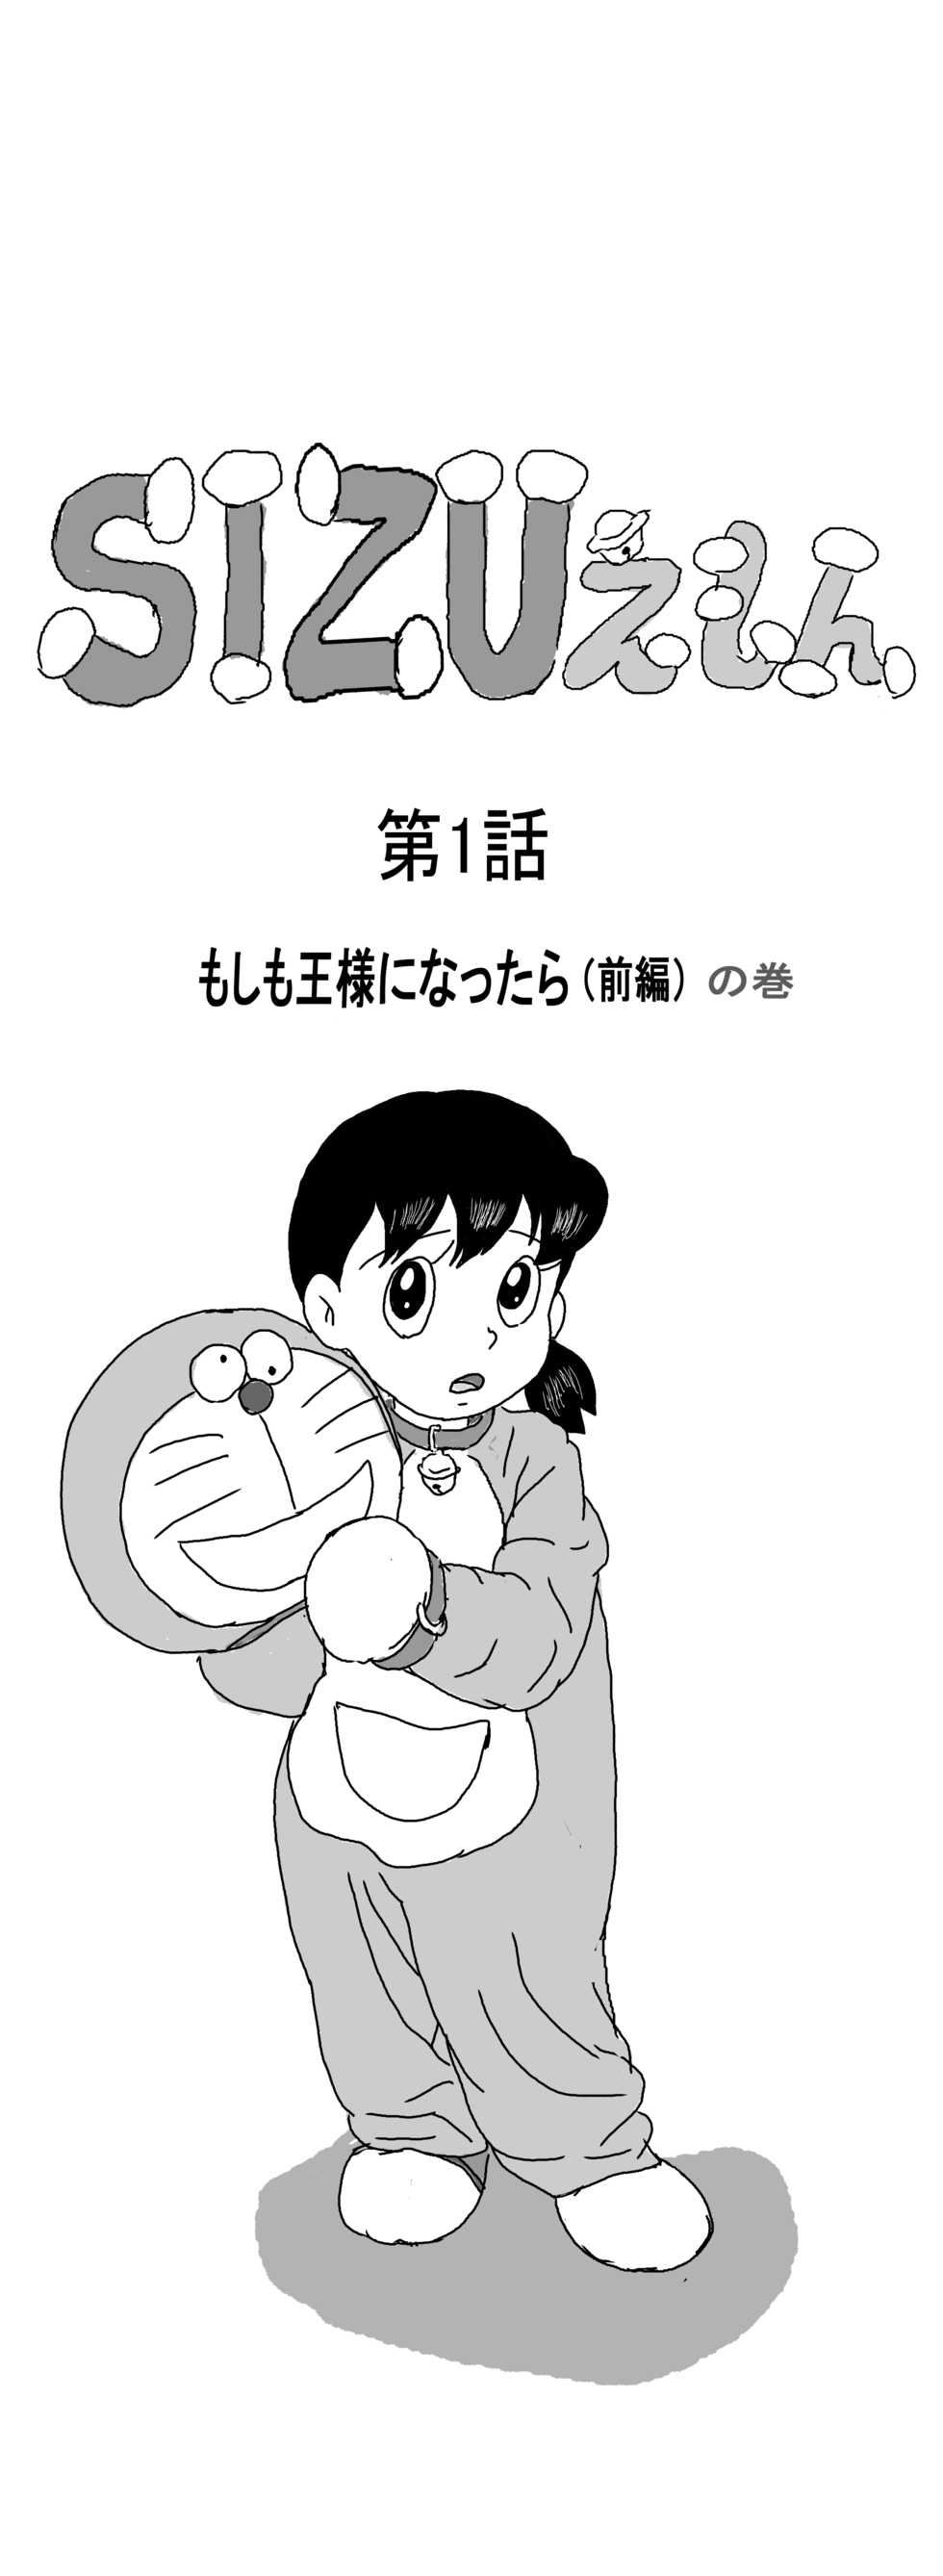 (442b) Sizuemon (Doraemon) - Page 1